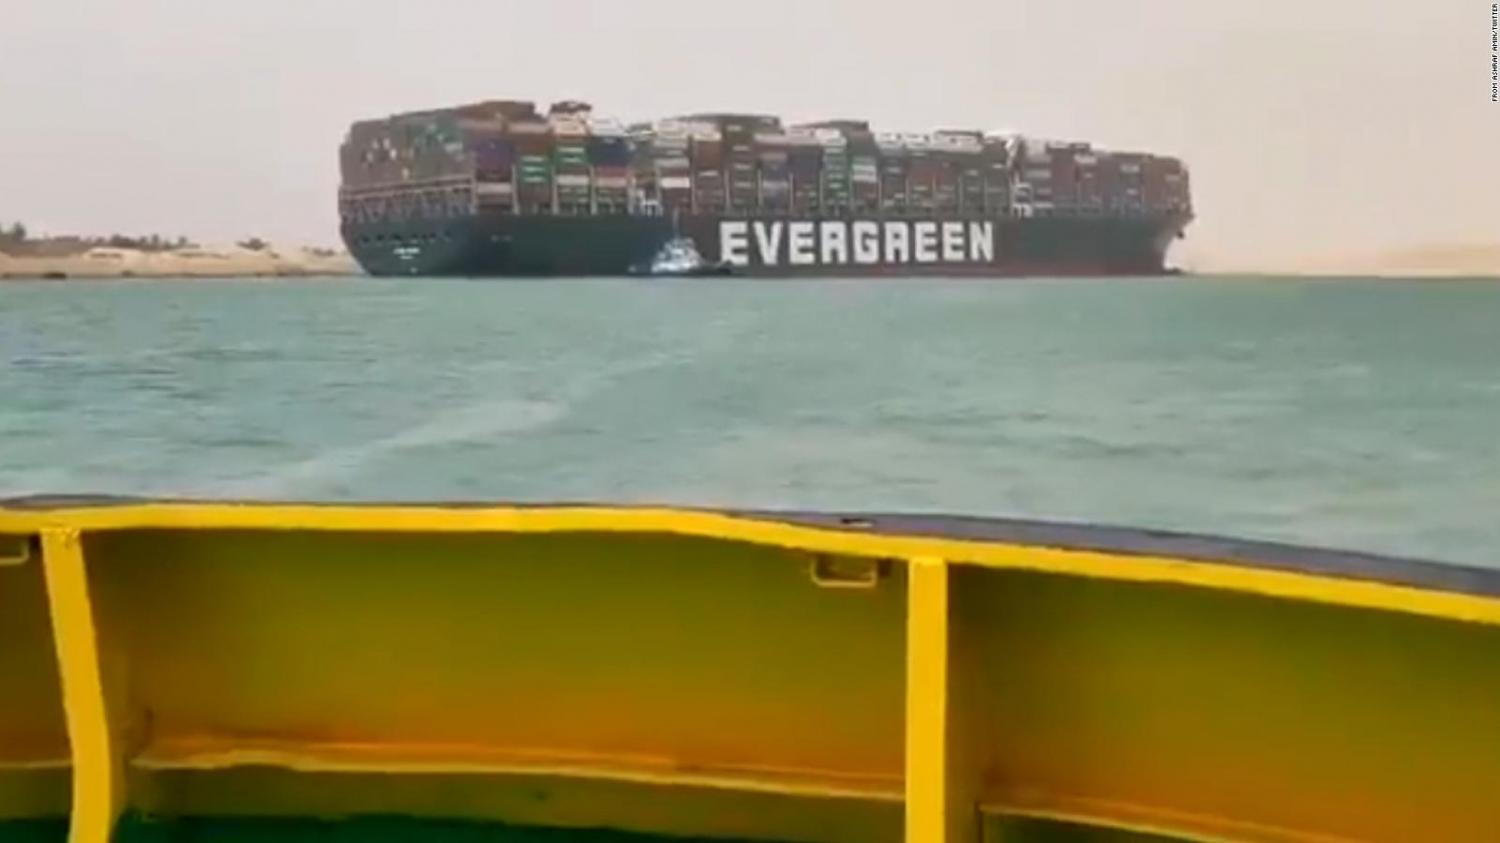 Suspenden temporalmente la navegación por el Canal de Suez por un buque encallado